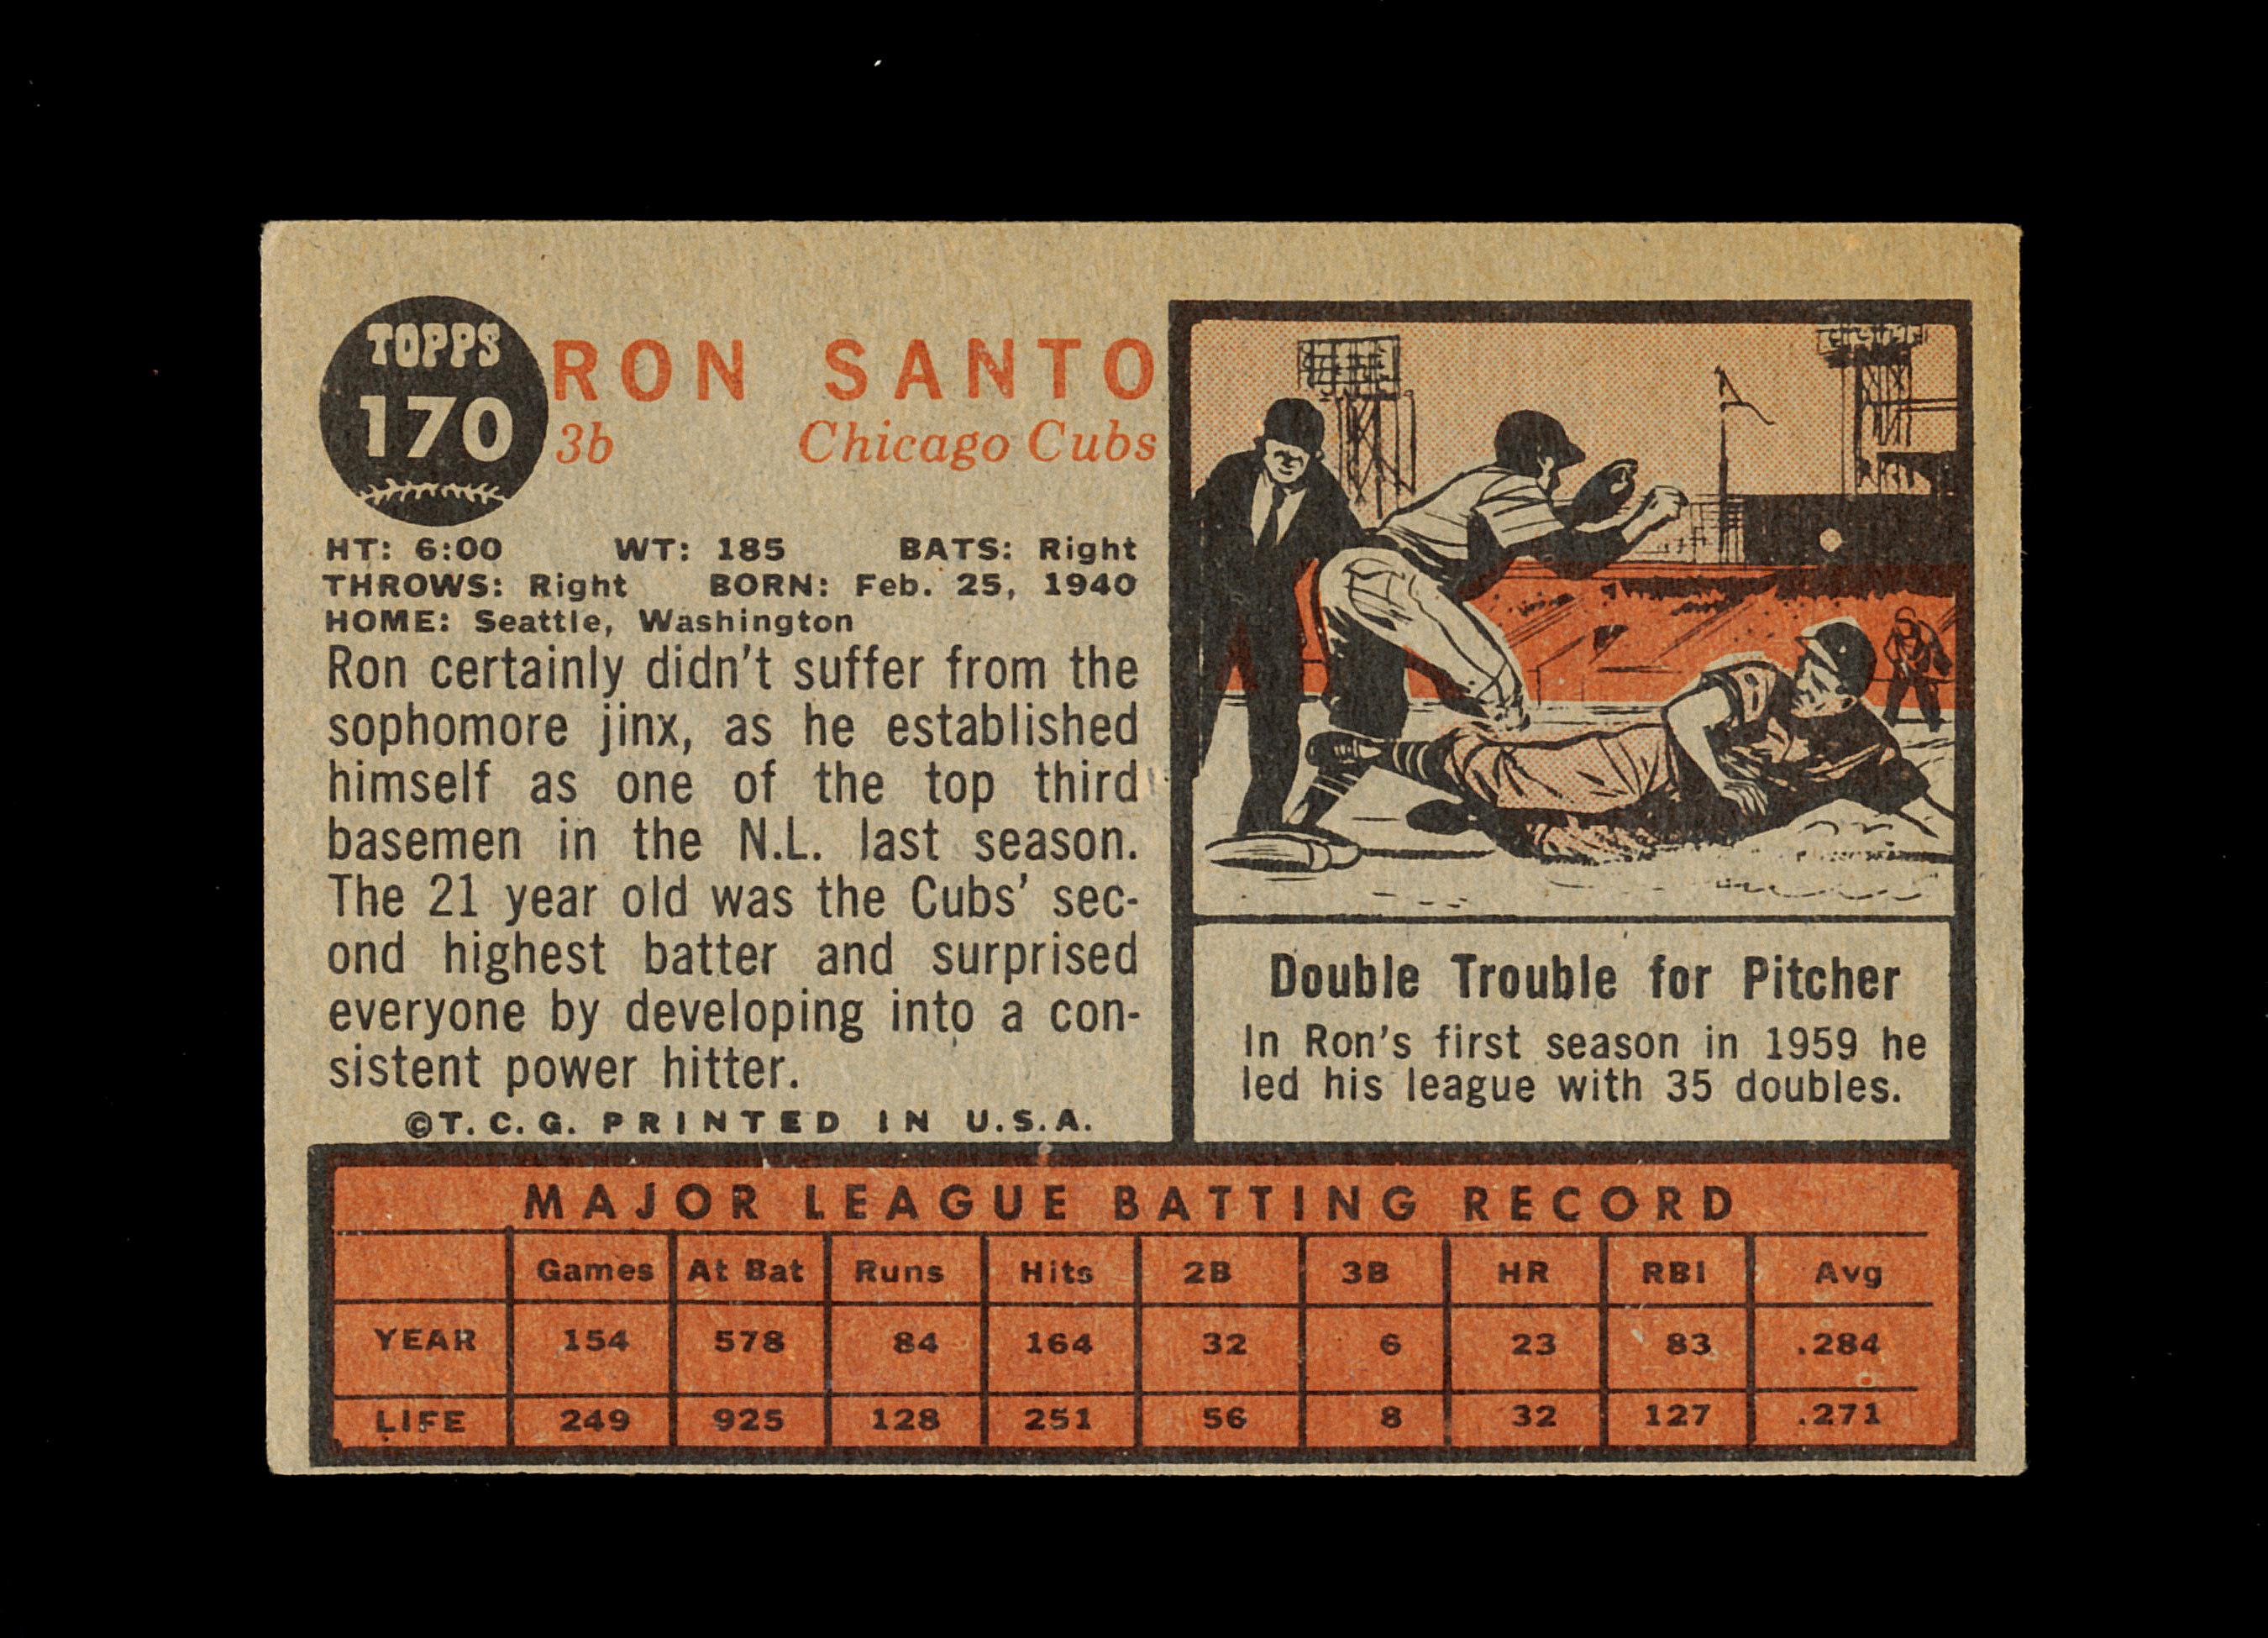 1962 Topps Baseball Card #170 Hall of Famer Ron Santo Chicago Bears